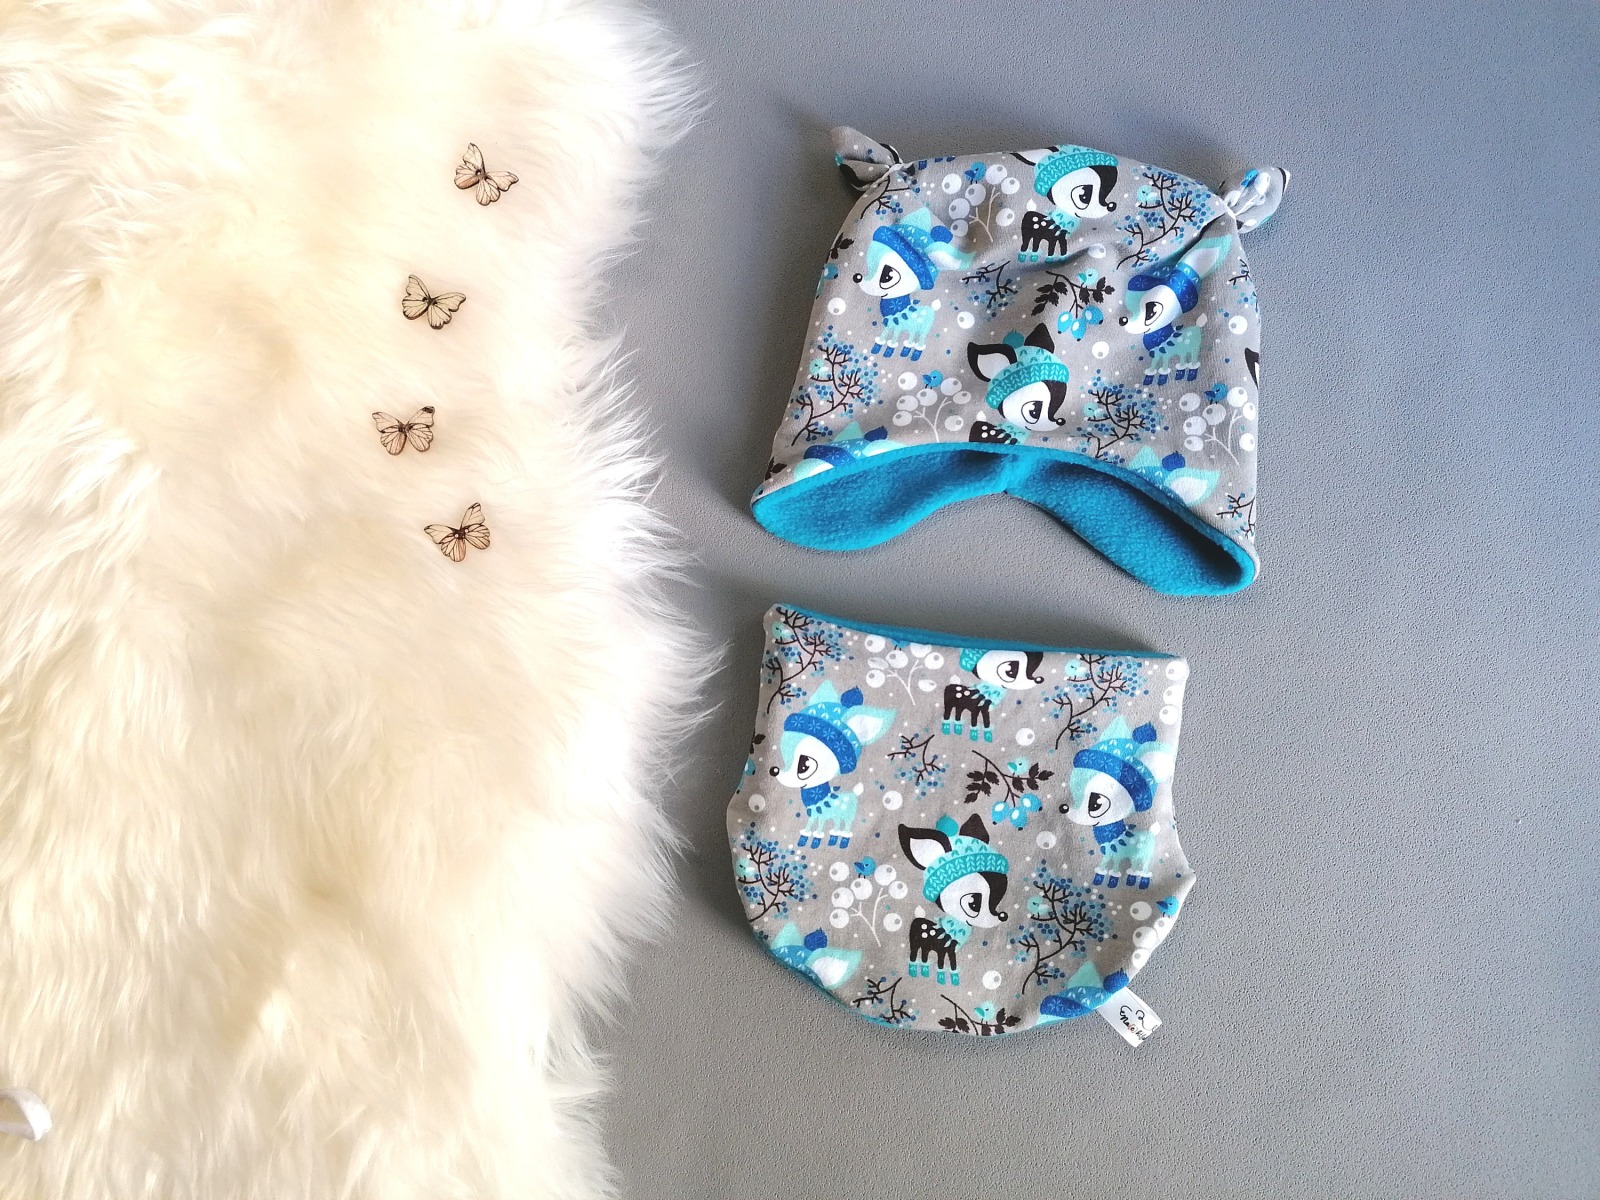 Halssocke für Babys und Kinder Kopfumfang 45-49cm mit Fleece Hafenkitz Winterkitz grau blau 2